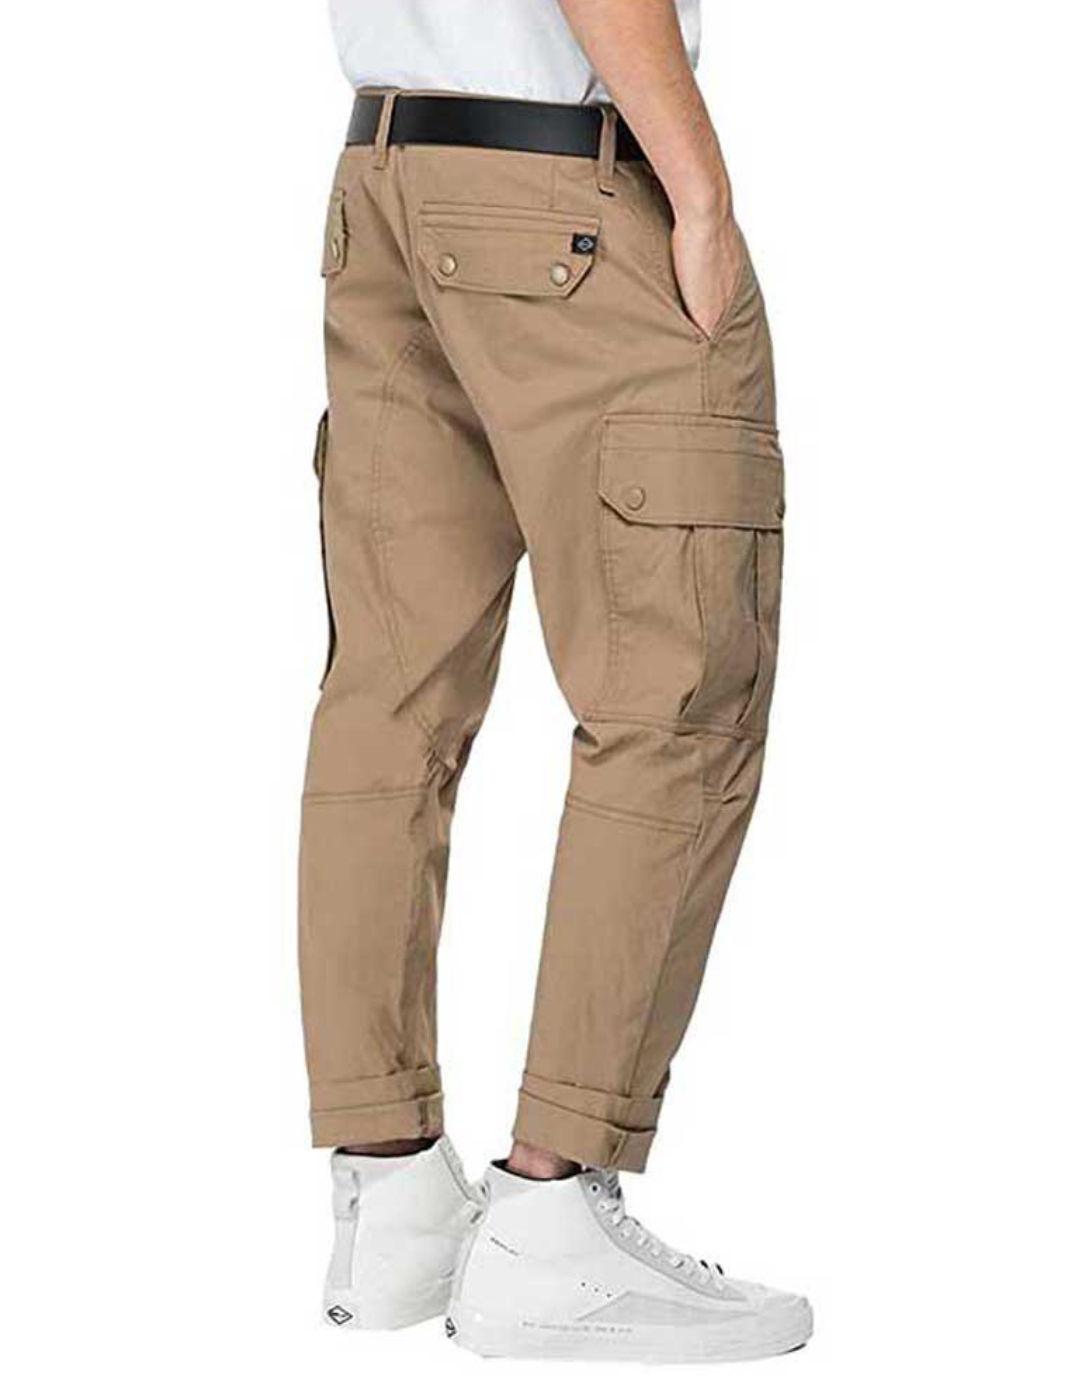 Pantalon Replay marrón para hombre -b